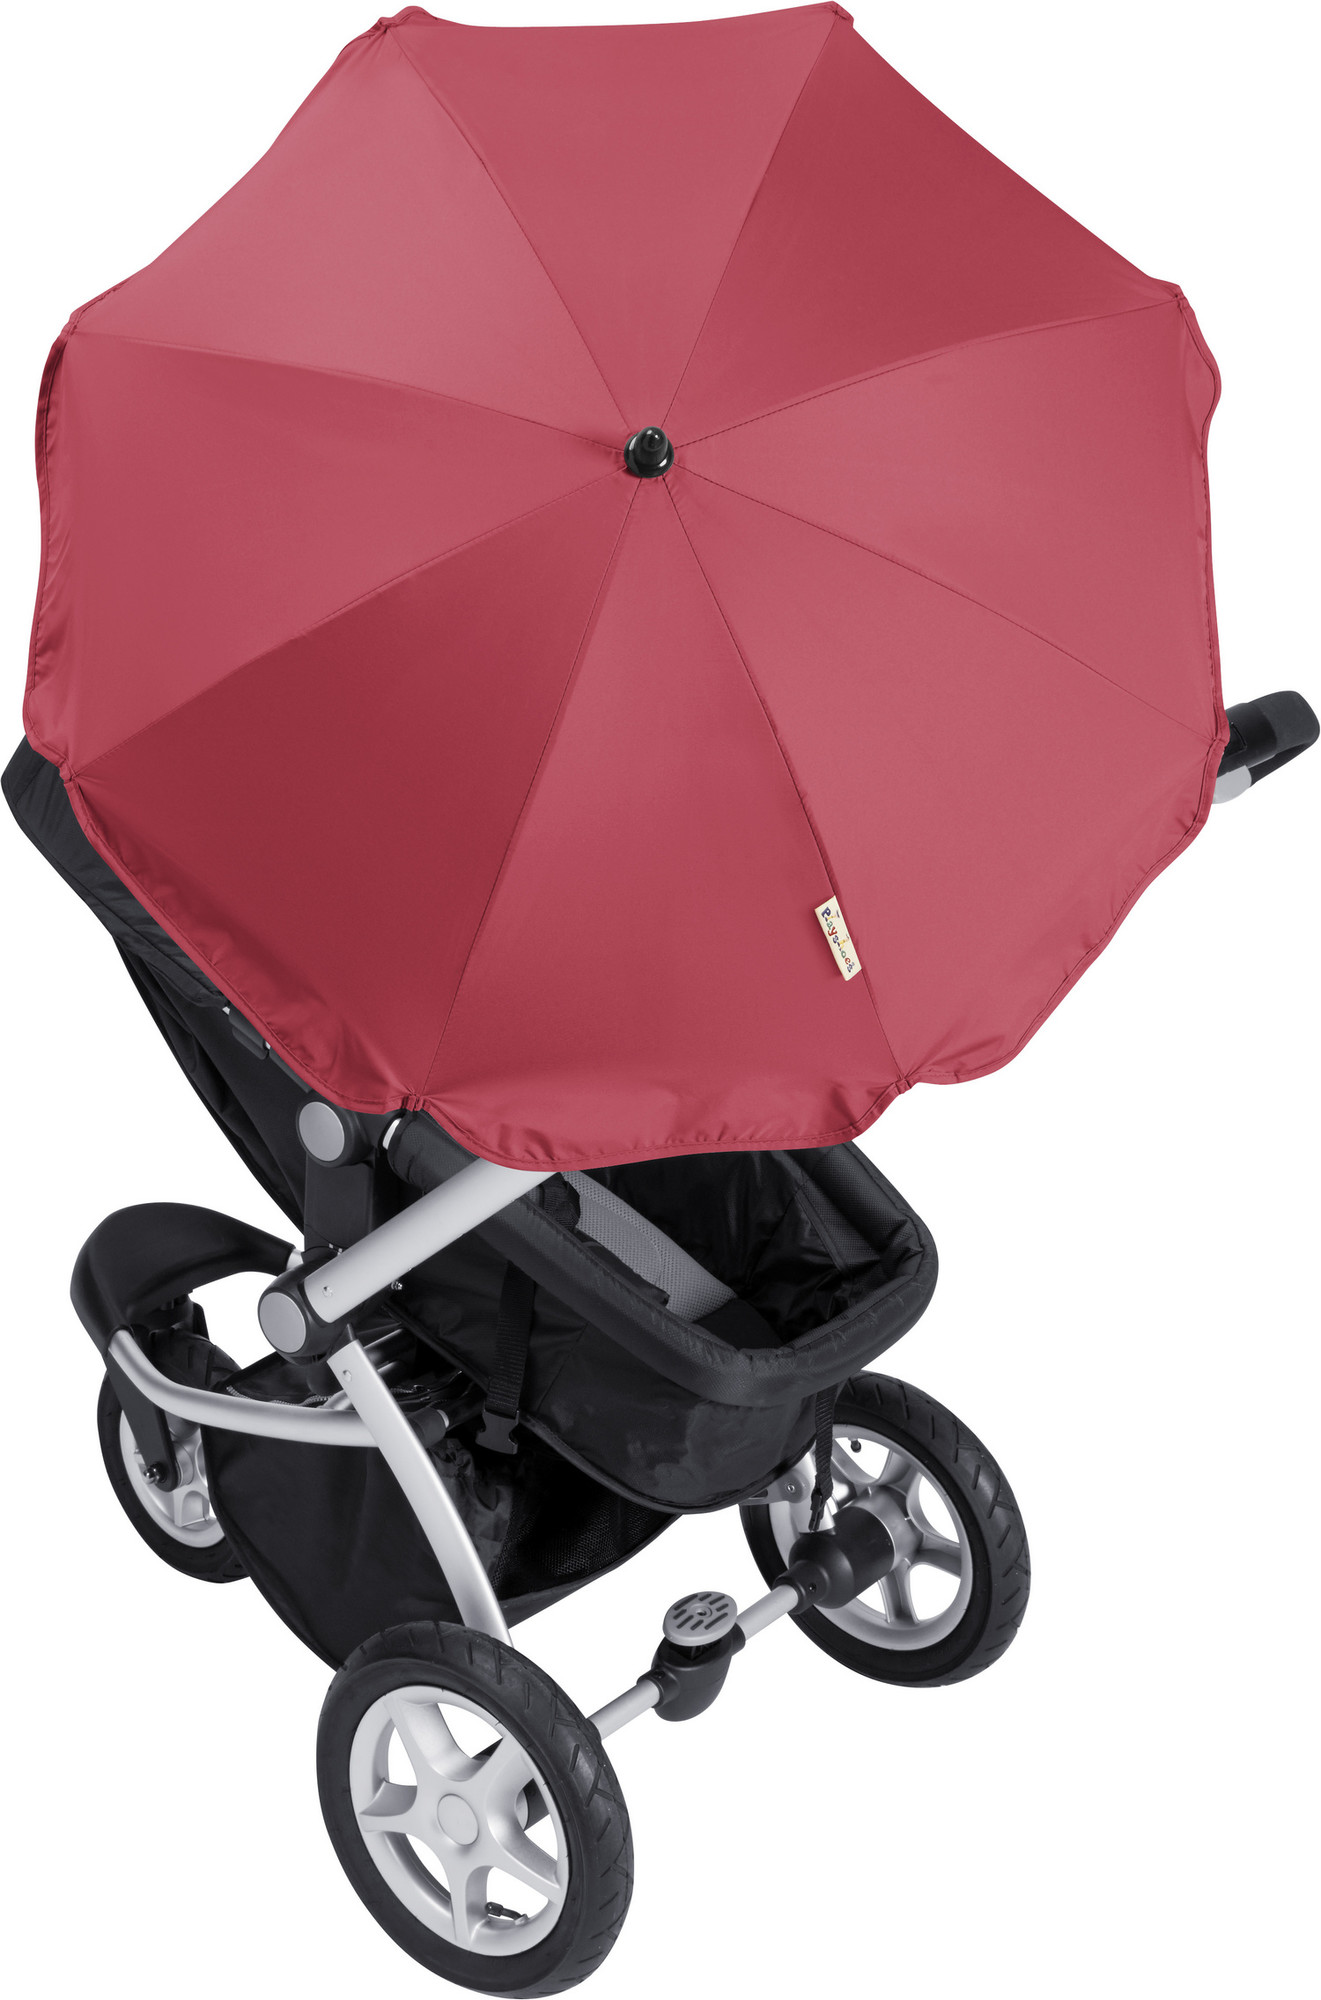 universal buggy umbrella